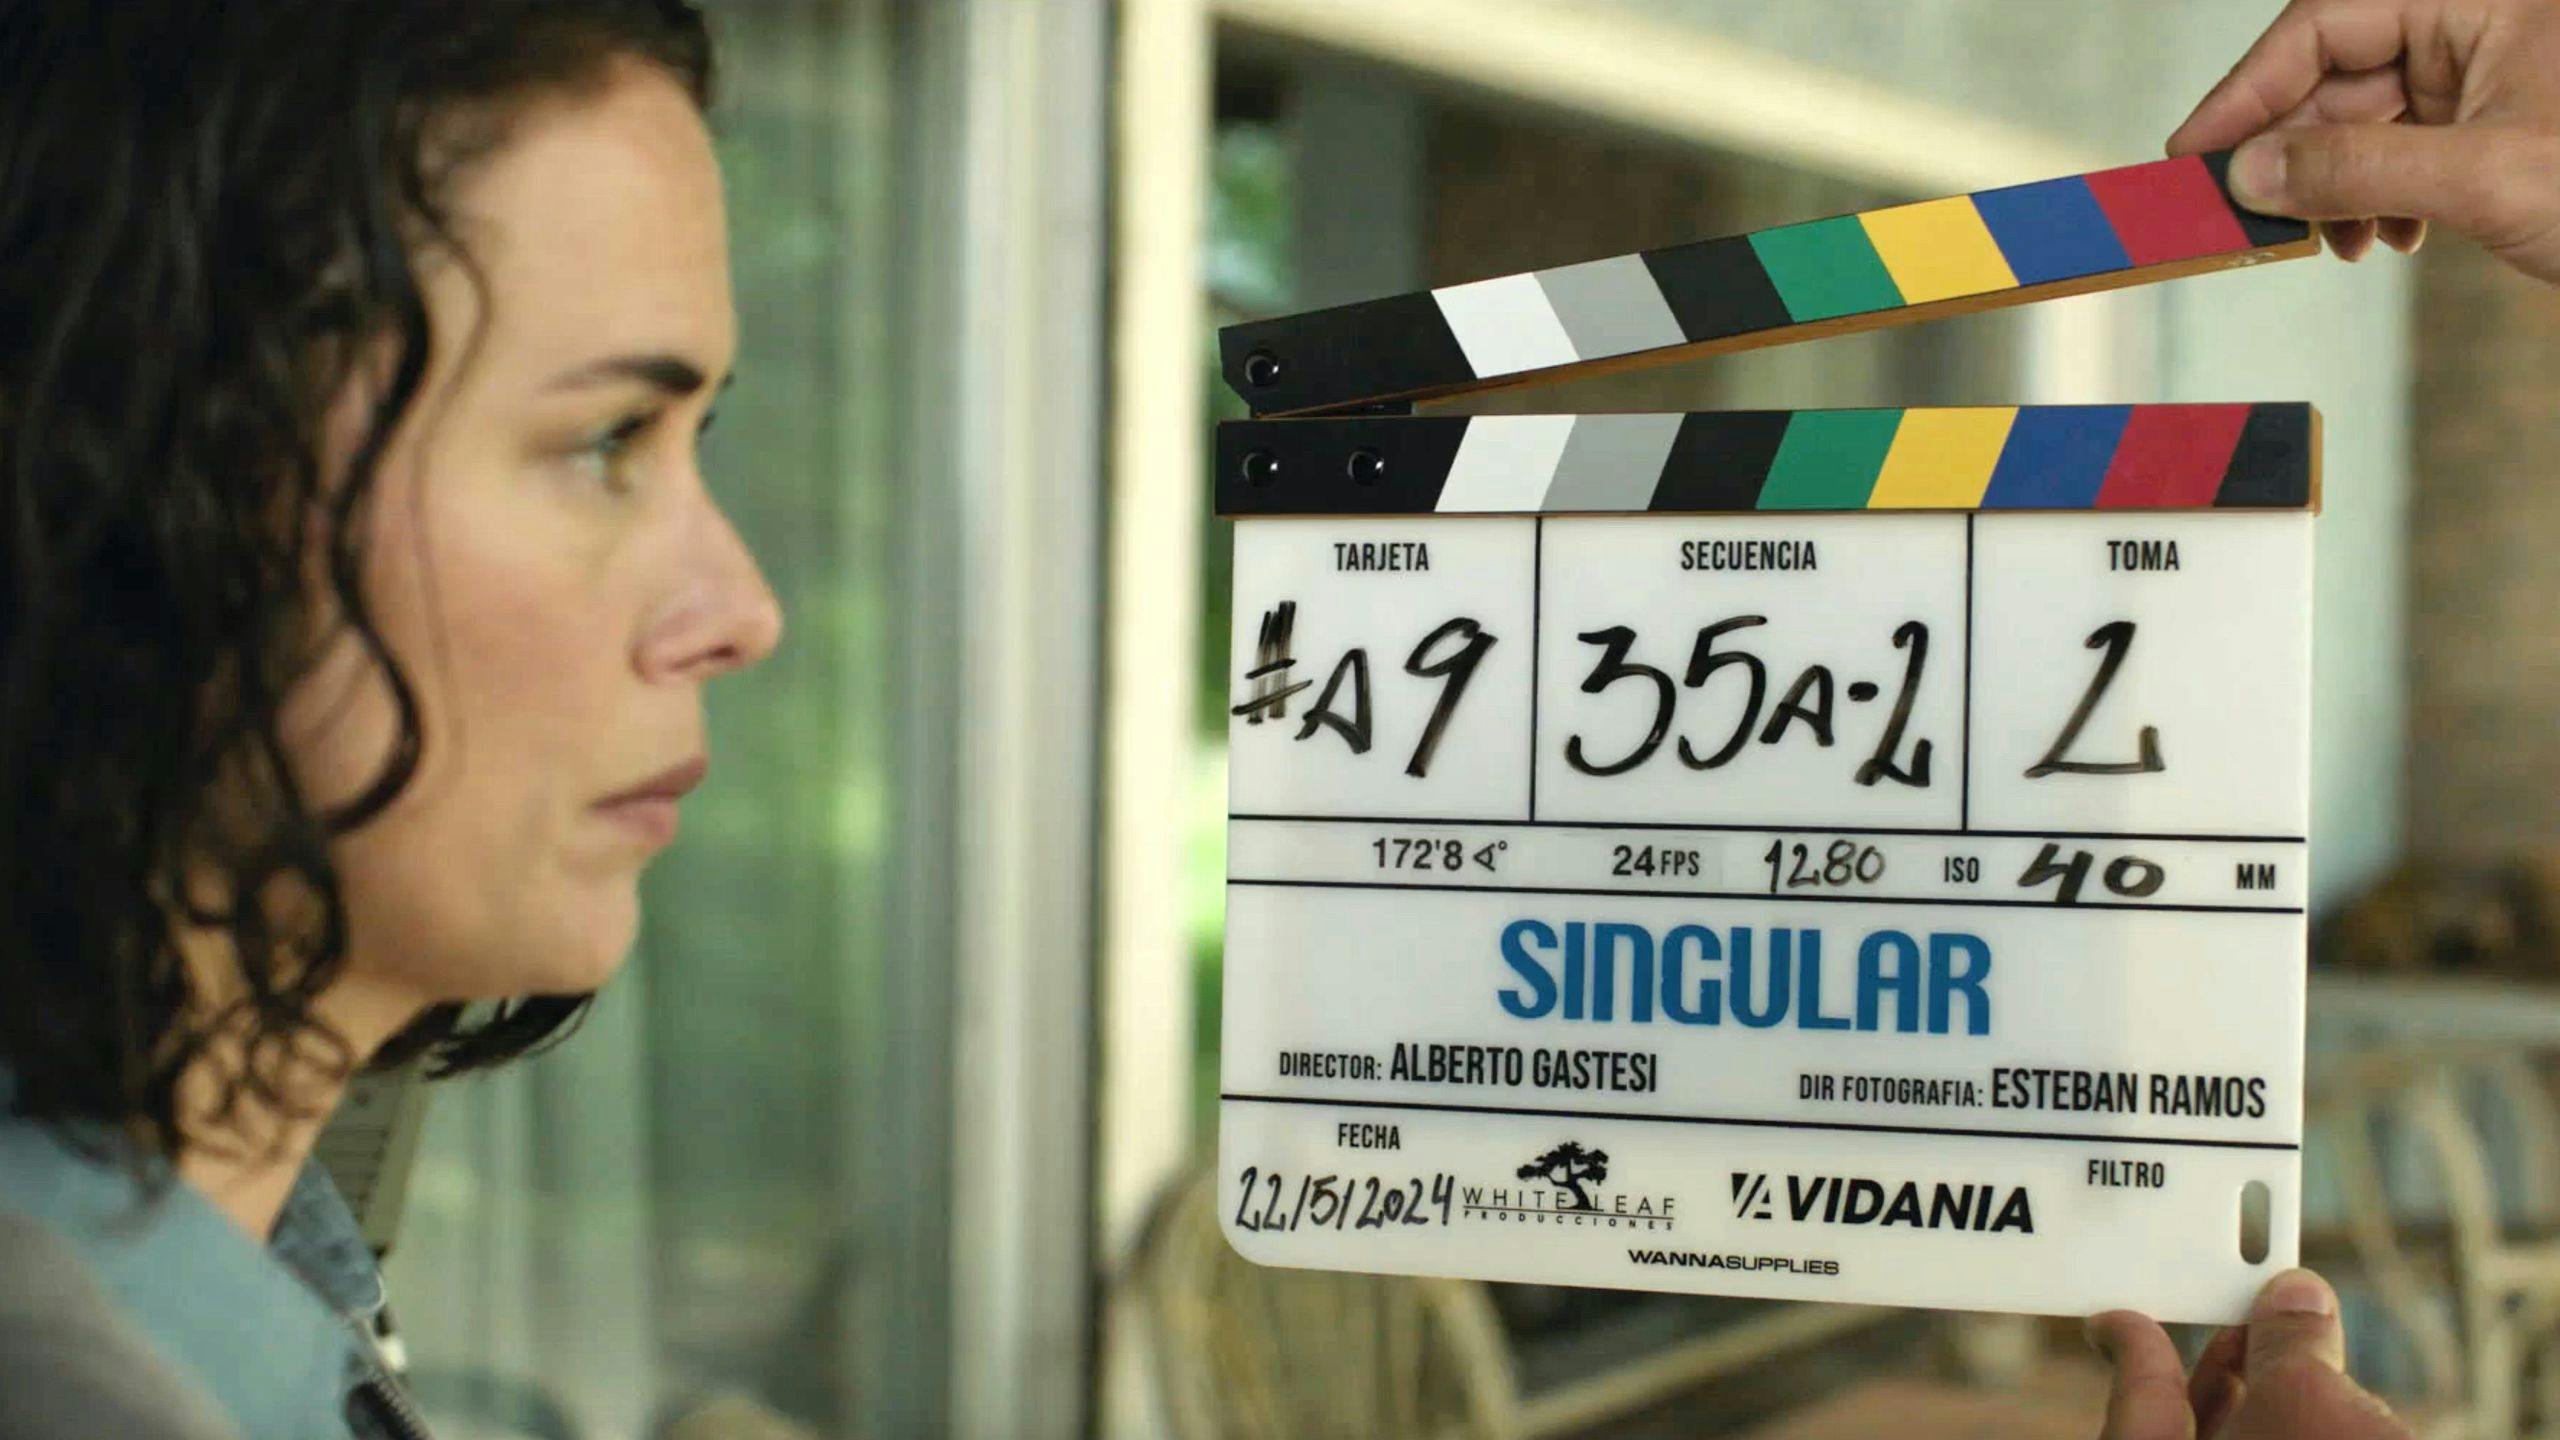 Fotografía del rodaje de 'Singular' con Patricia López Arnaiz ante una claqueta